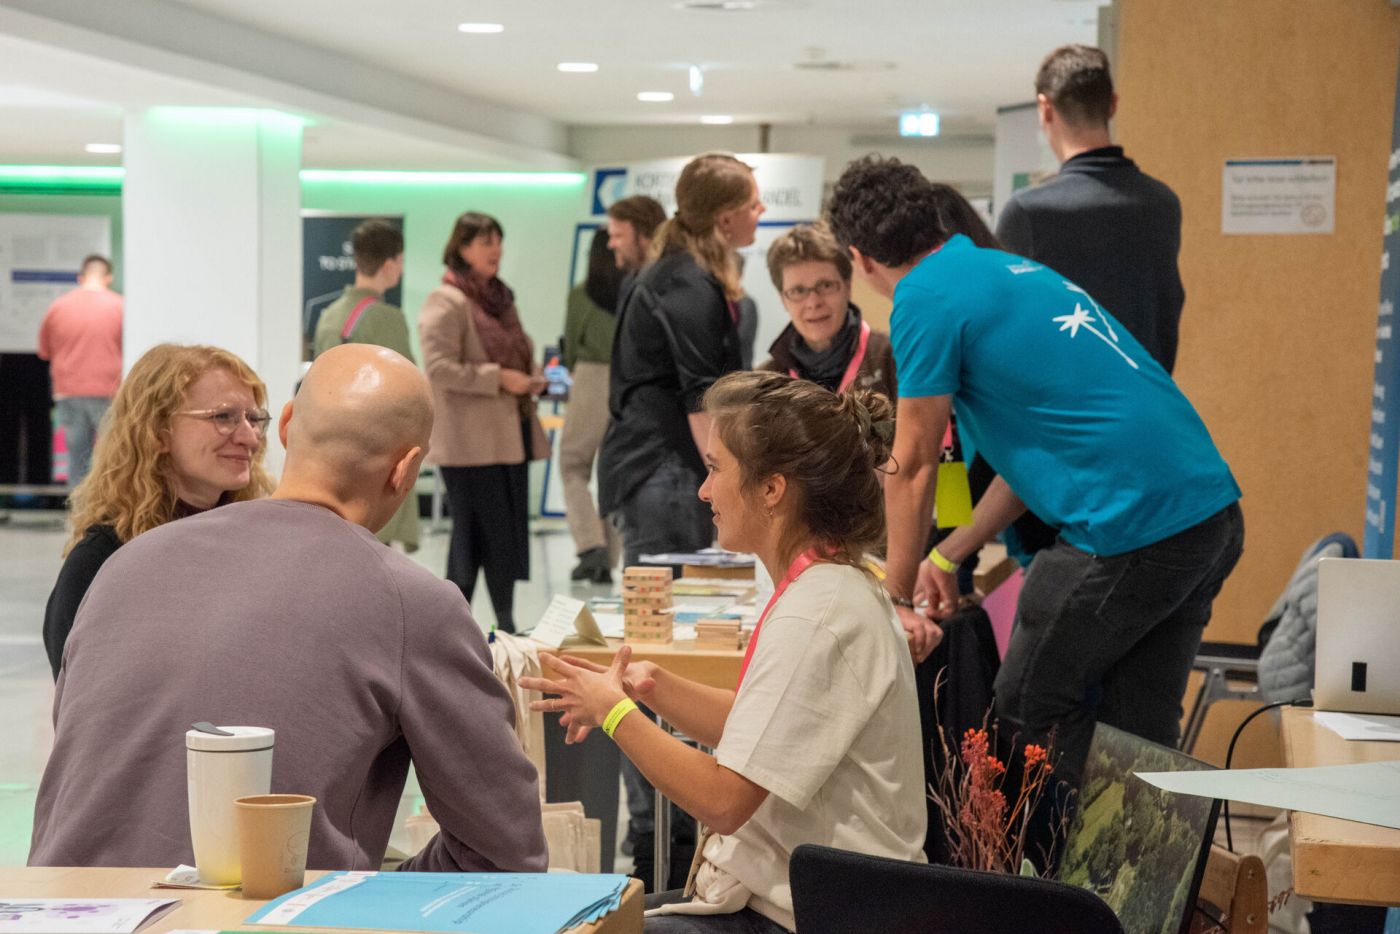 Personenen unterhalten sich miteinander auf dem SINN-Kongress - einer tagung zu ökologisch-sozialen Innovationen in der Halle Münsterland. (Foto: FH Münster/Michelle Liedtke)